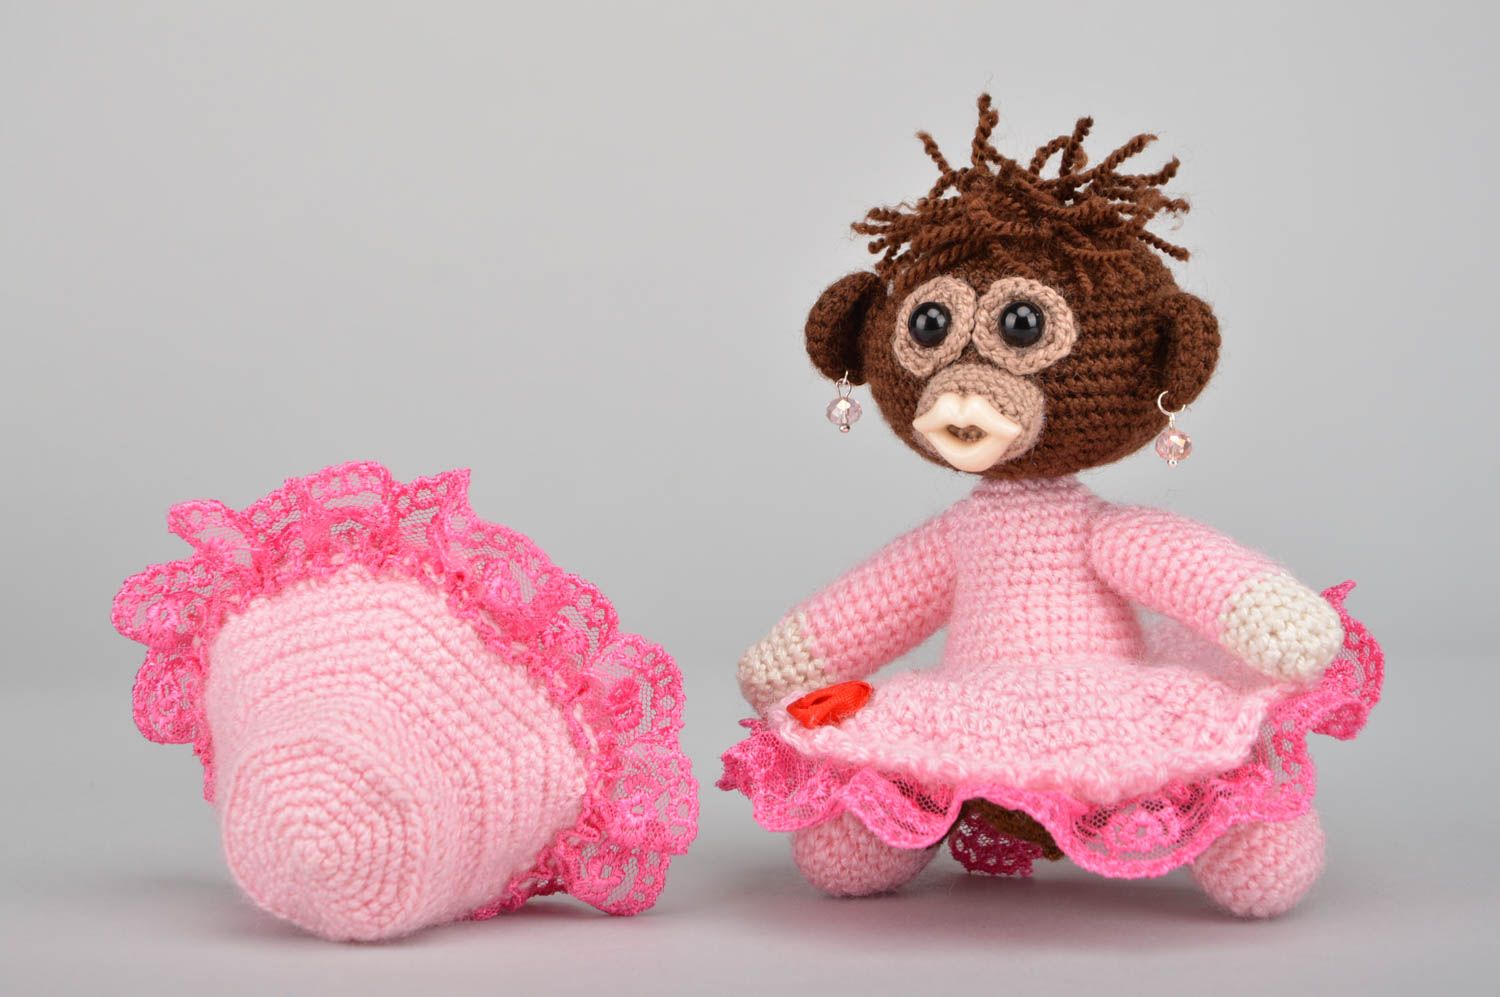 Мягкая вязаная игрушка обезьянка в розовом наряде из акриловых ниток хендмейд фото 4